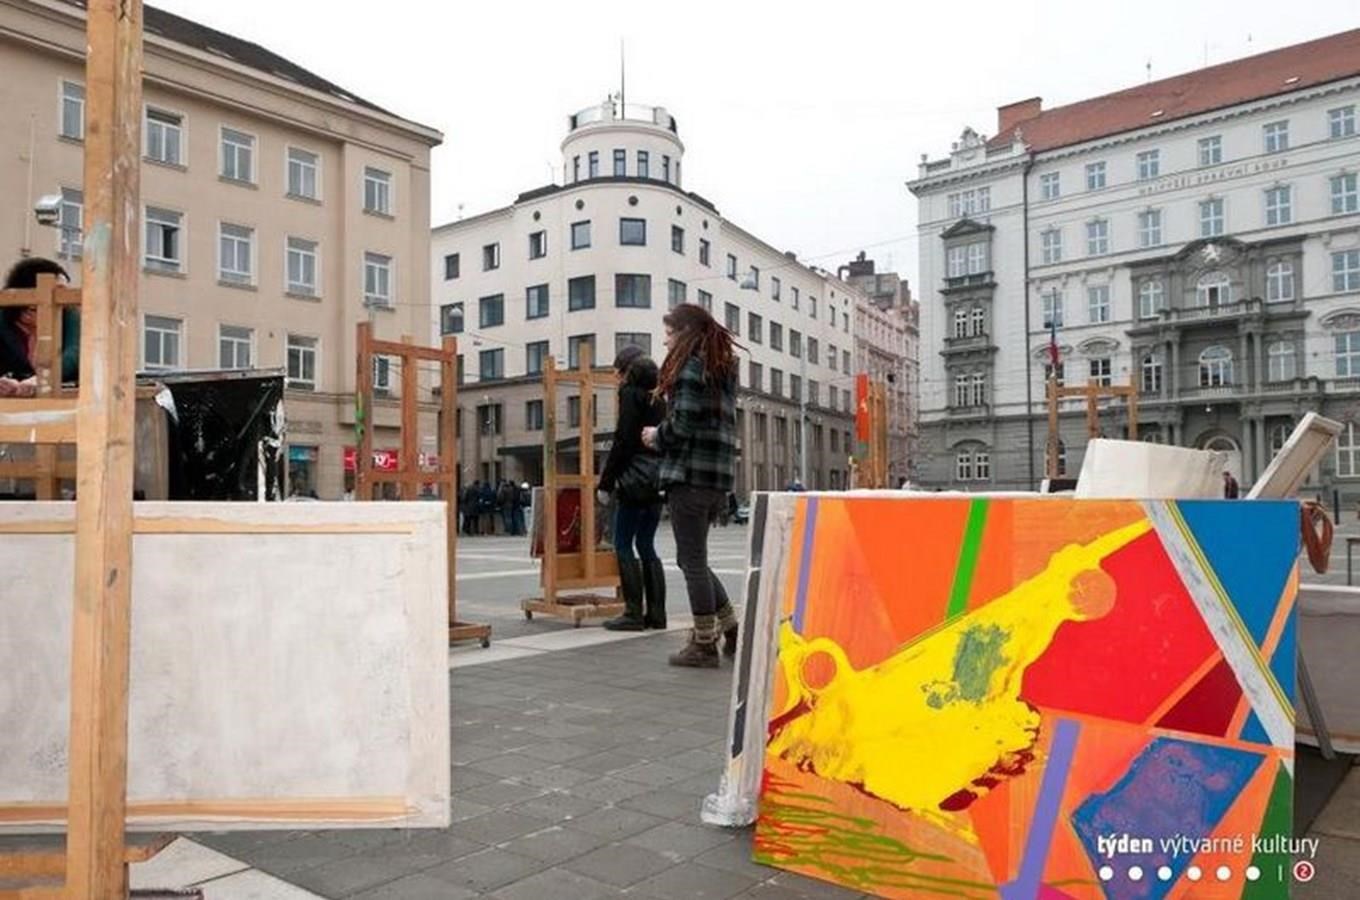 Týden výtvarné kultury - týden veřejných dialogů s výtvarným uměním v Brně